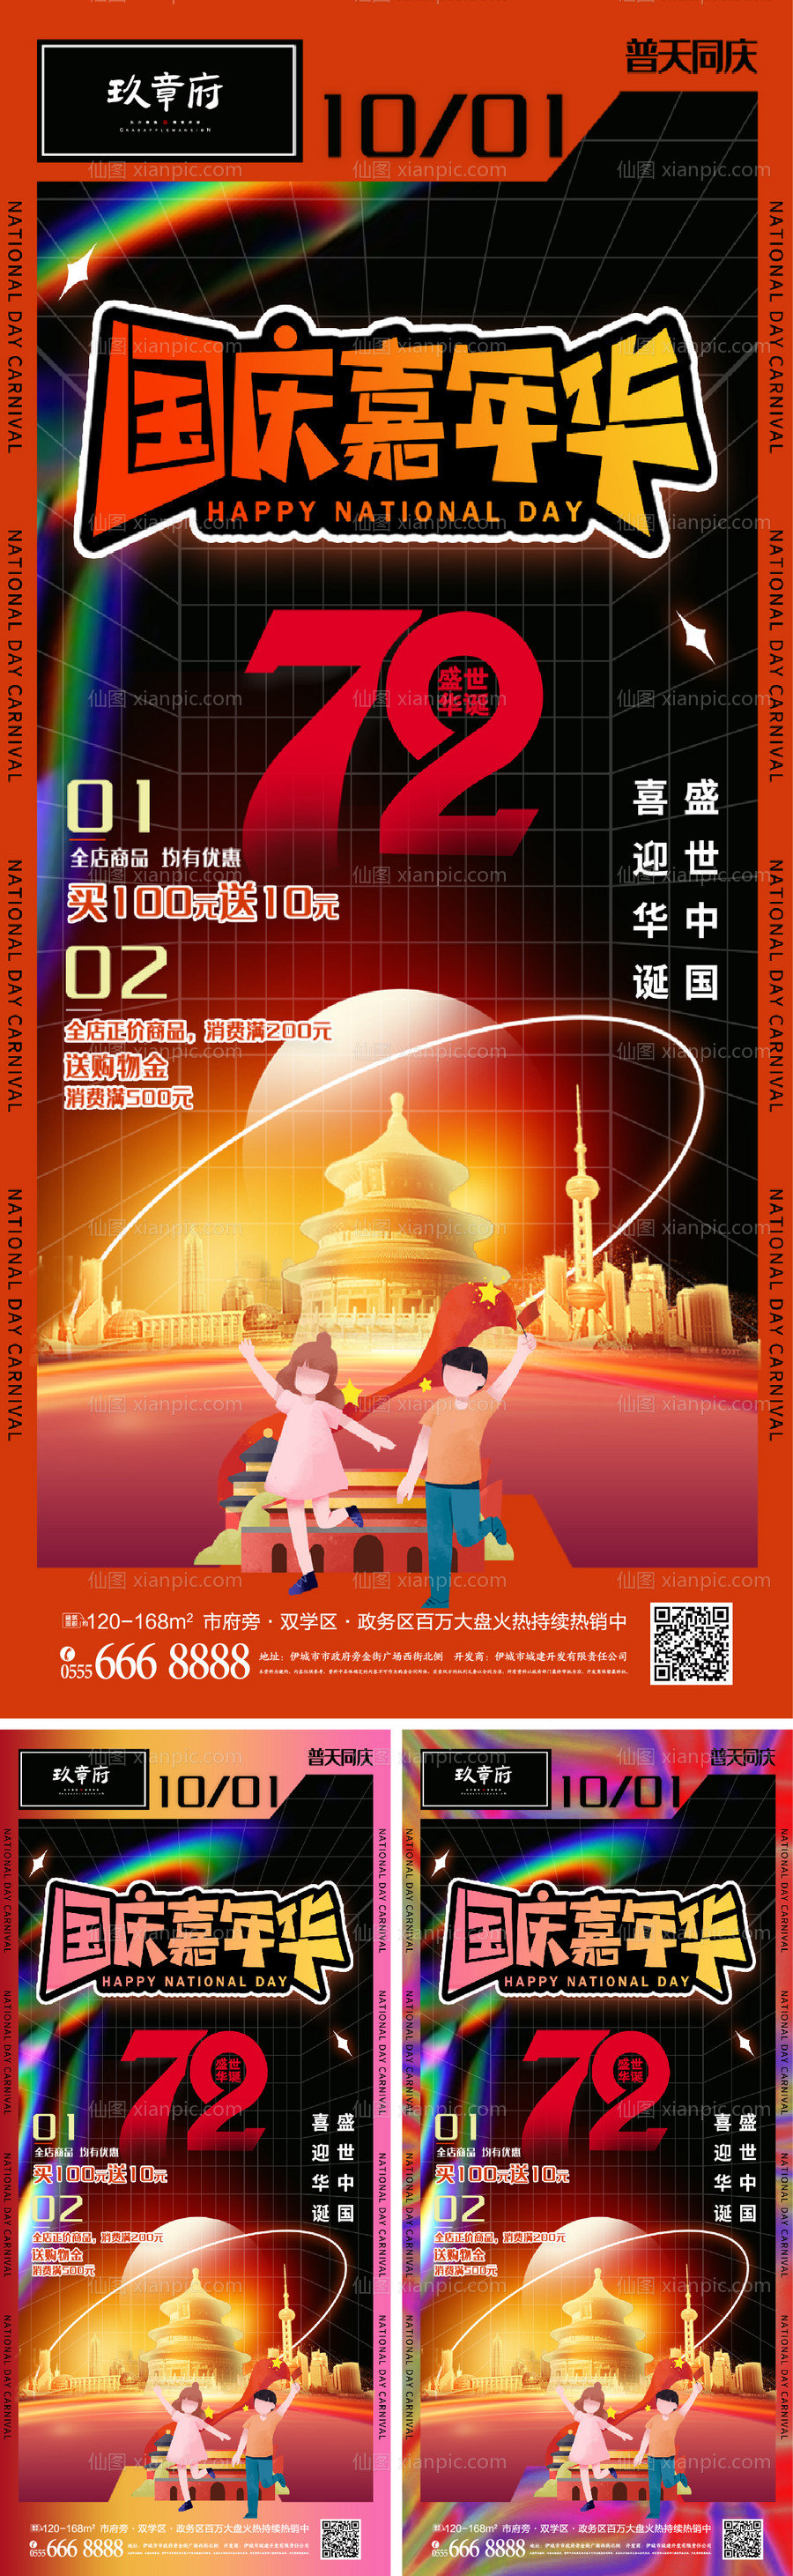 仙图网-地产国庆节潮流系列海报